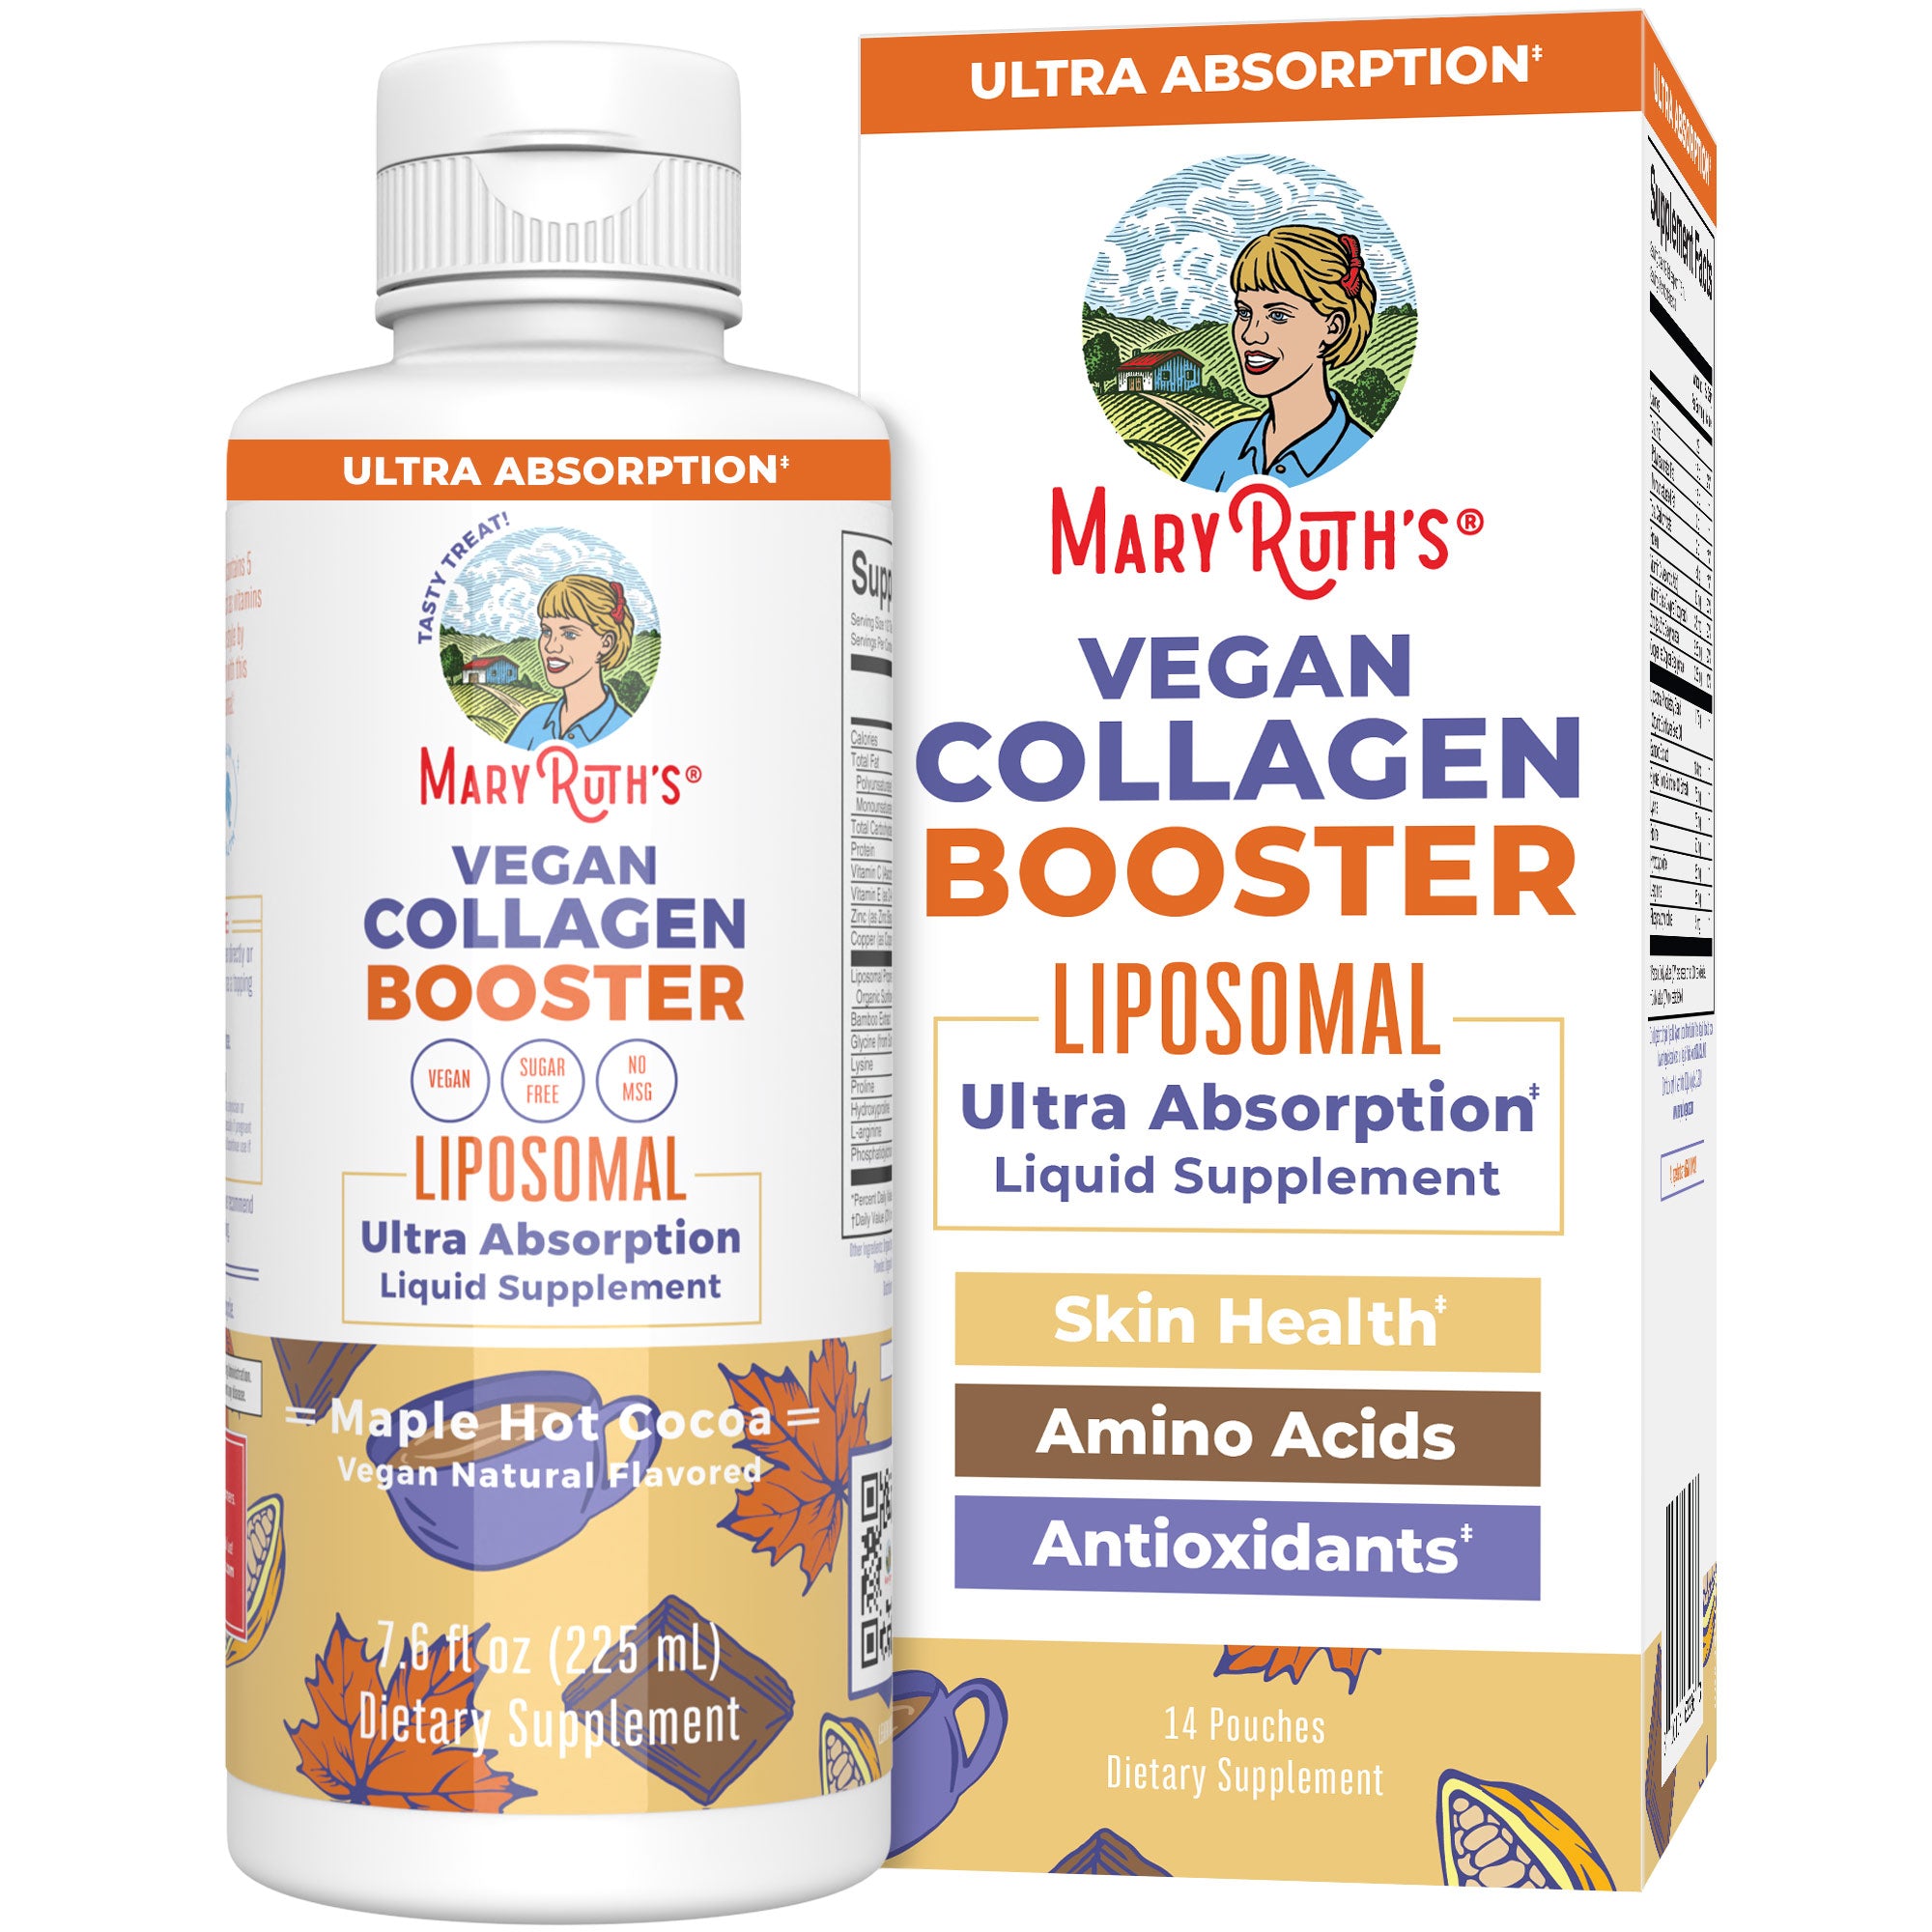 Vegan Collagen Booster Liposomal